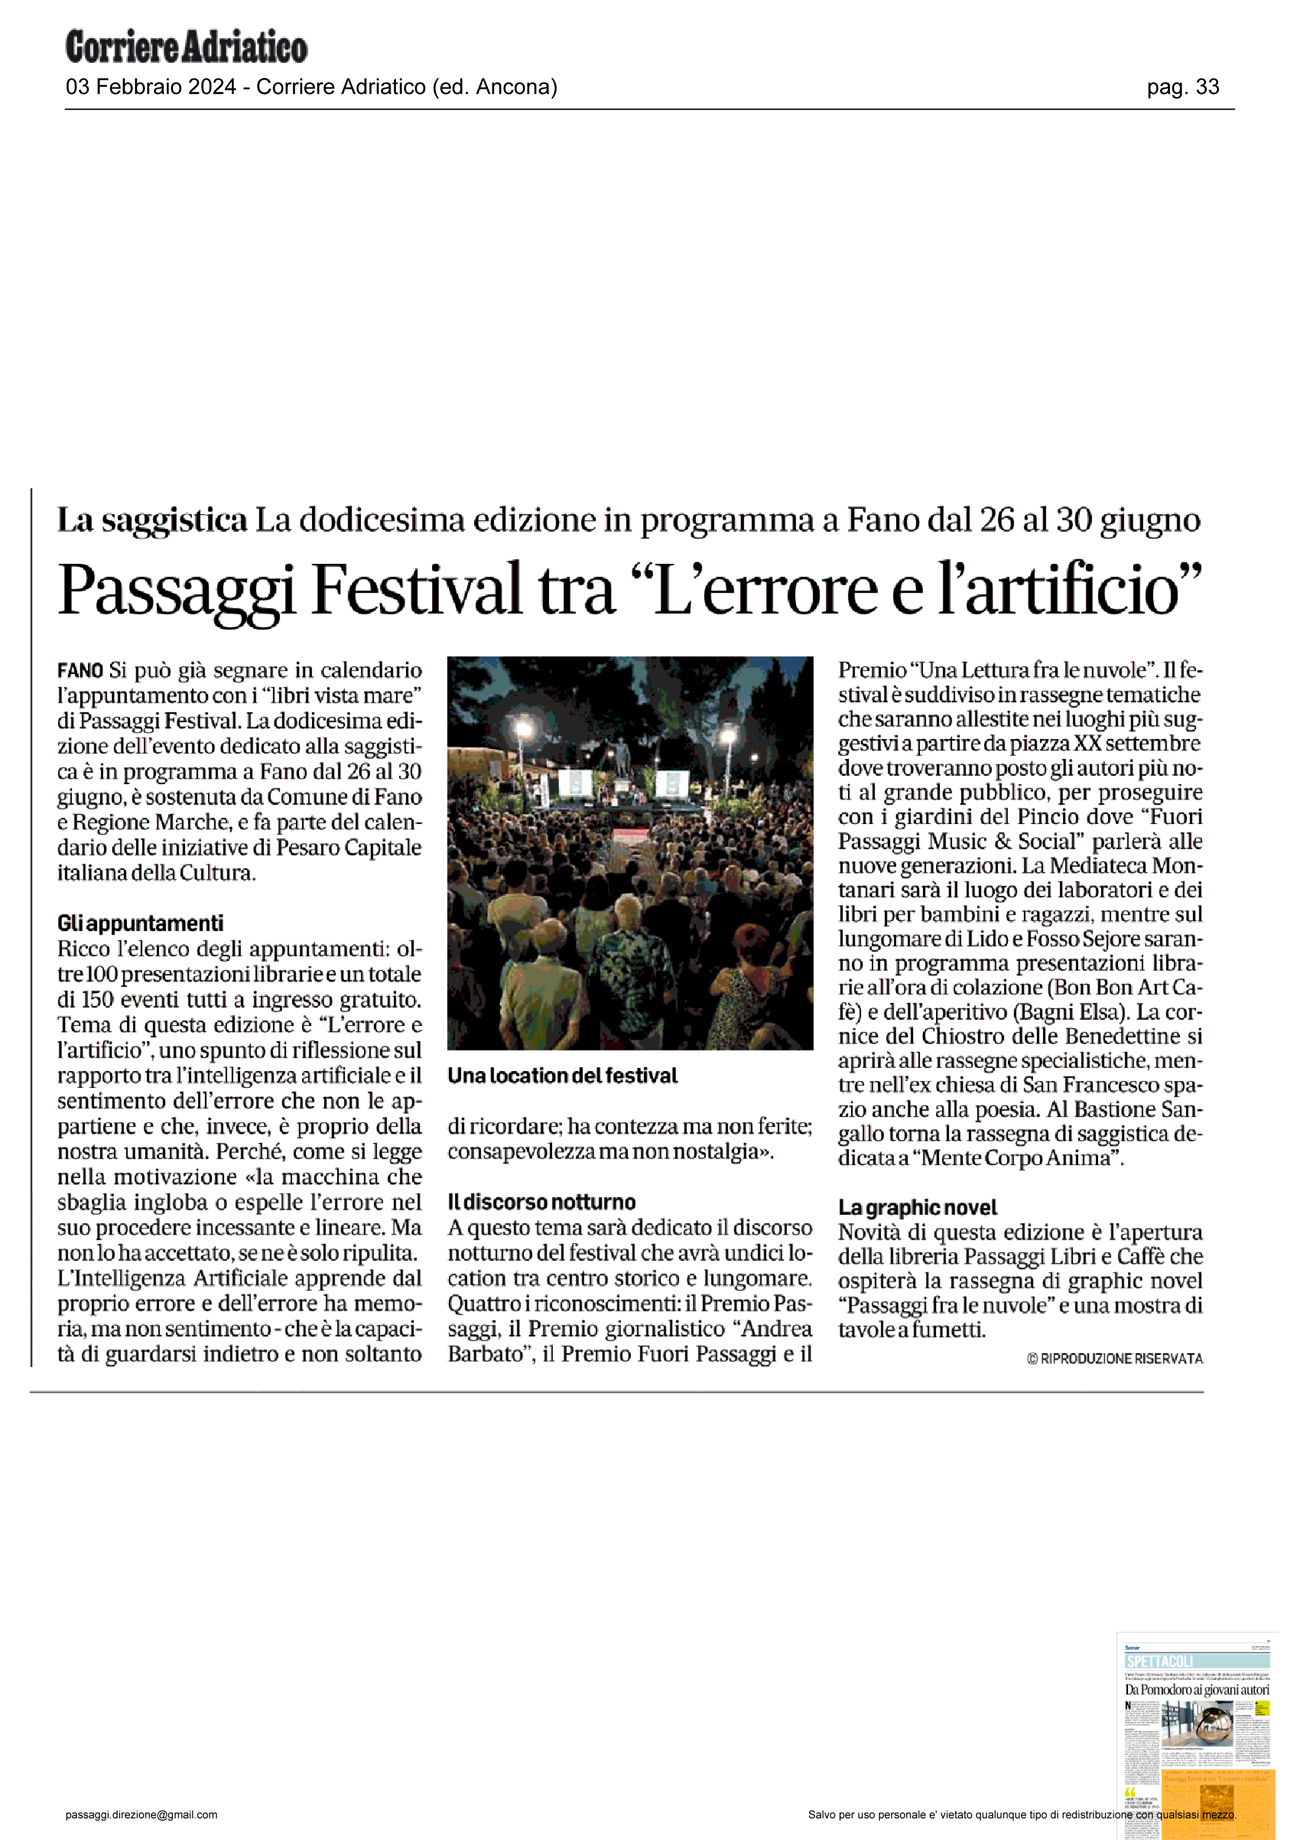 Corriere_Adriatico_passaggi_festival_tra_l_errore_e_l_artificio